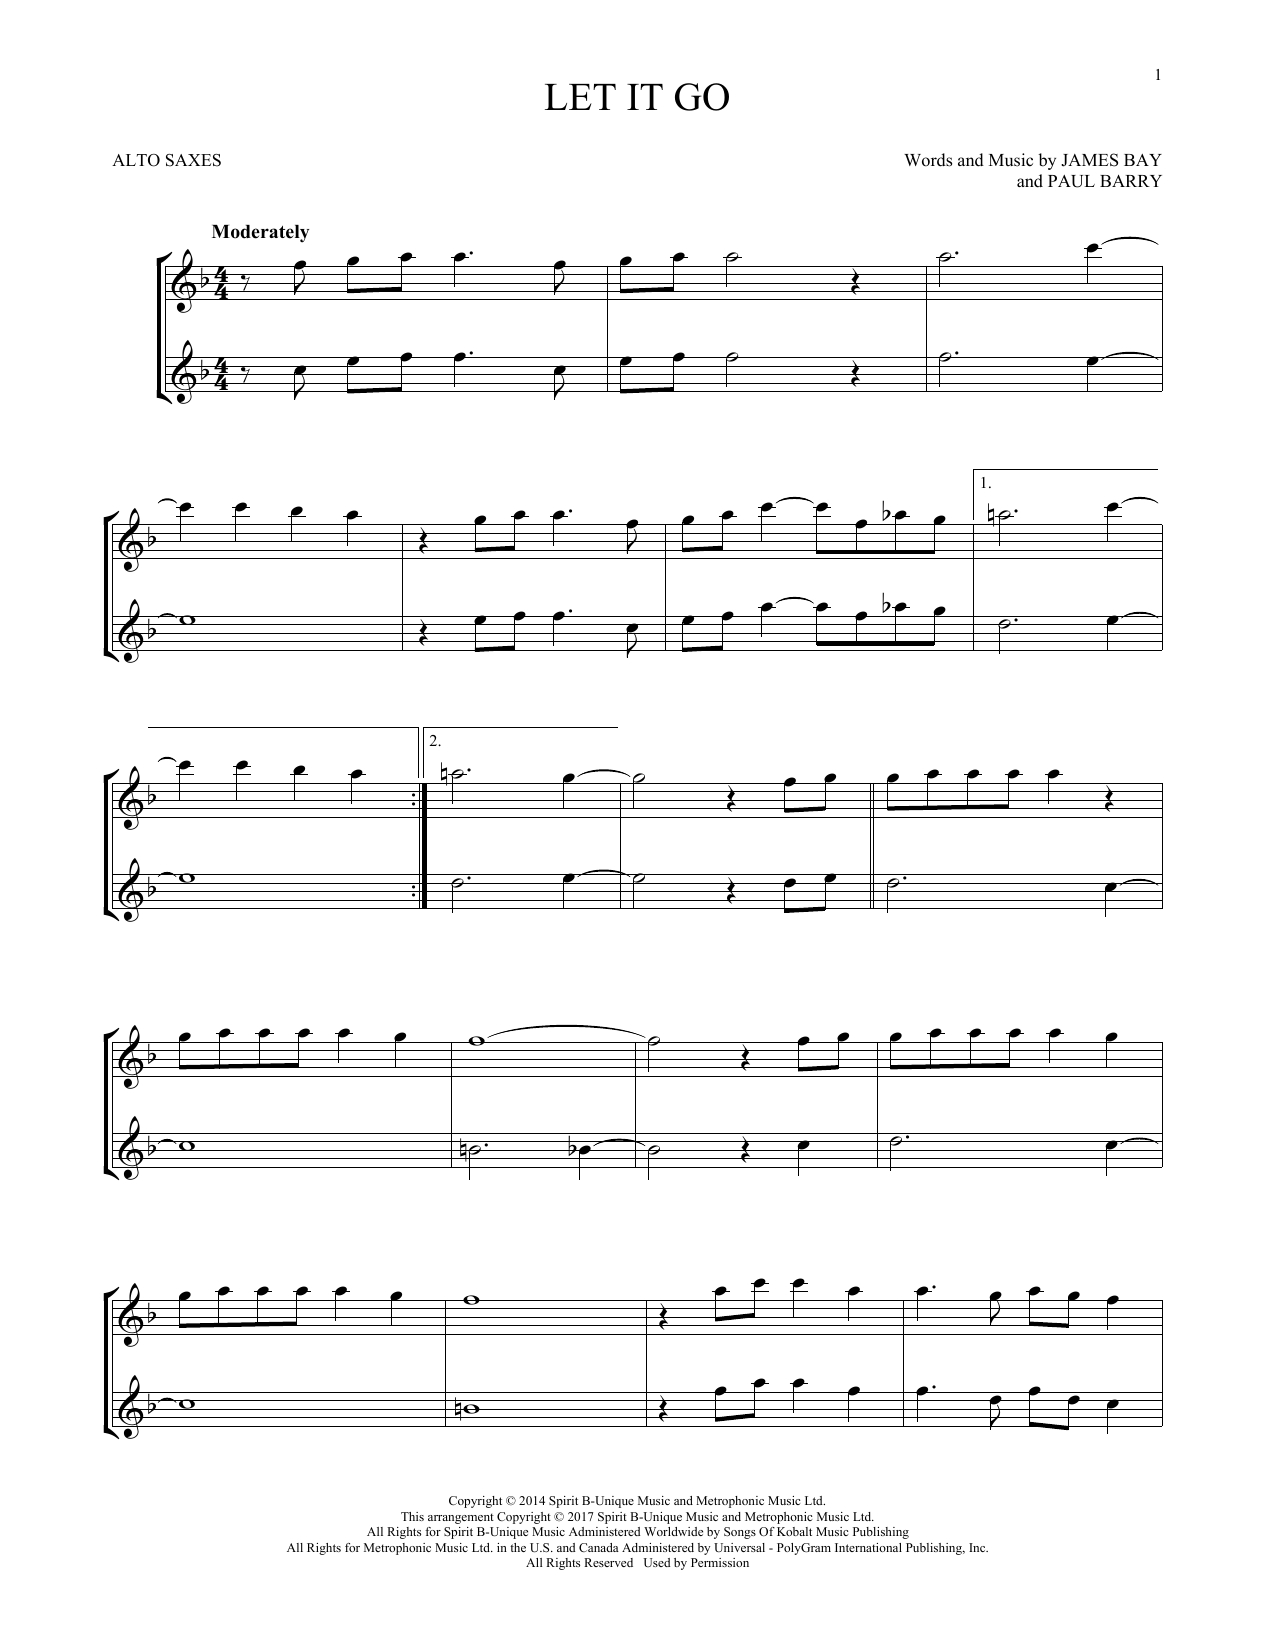 Let It Go James Bay Chords Sheet Music Digital Files To Print Licensed James Bay Digital